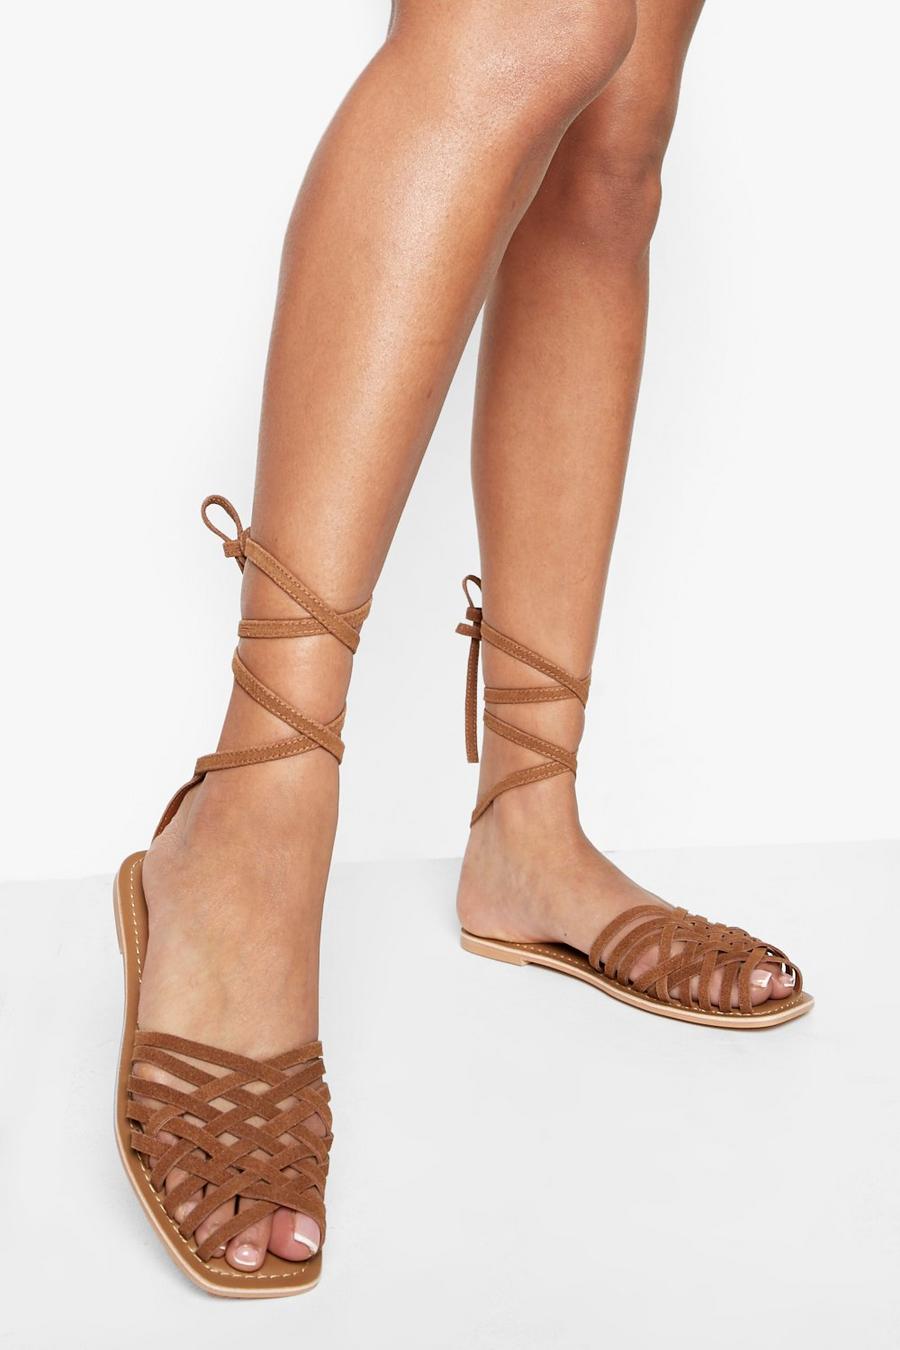 Sandalias con tiras de cuero cruzadas, Tan marrón